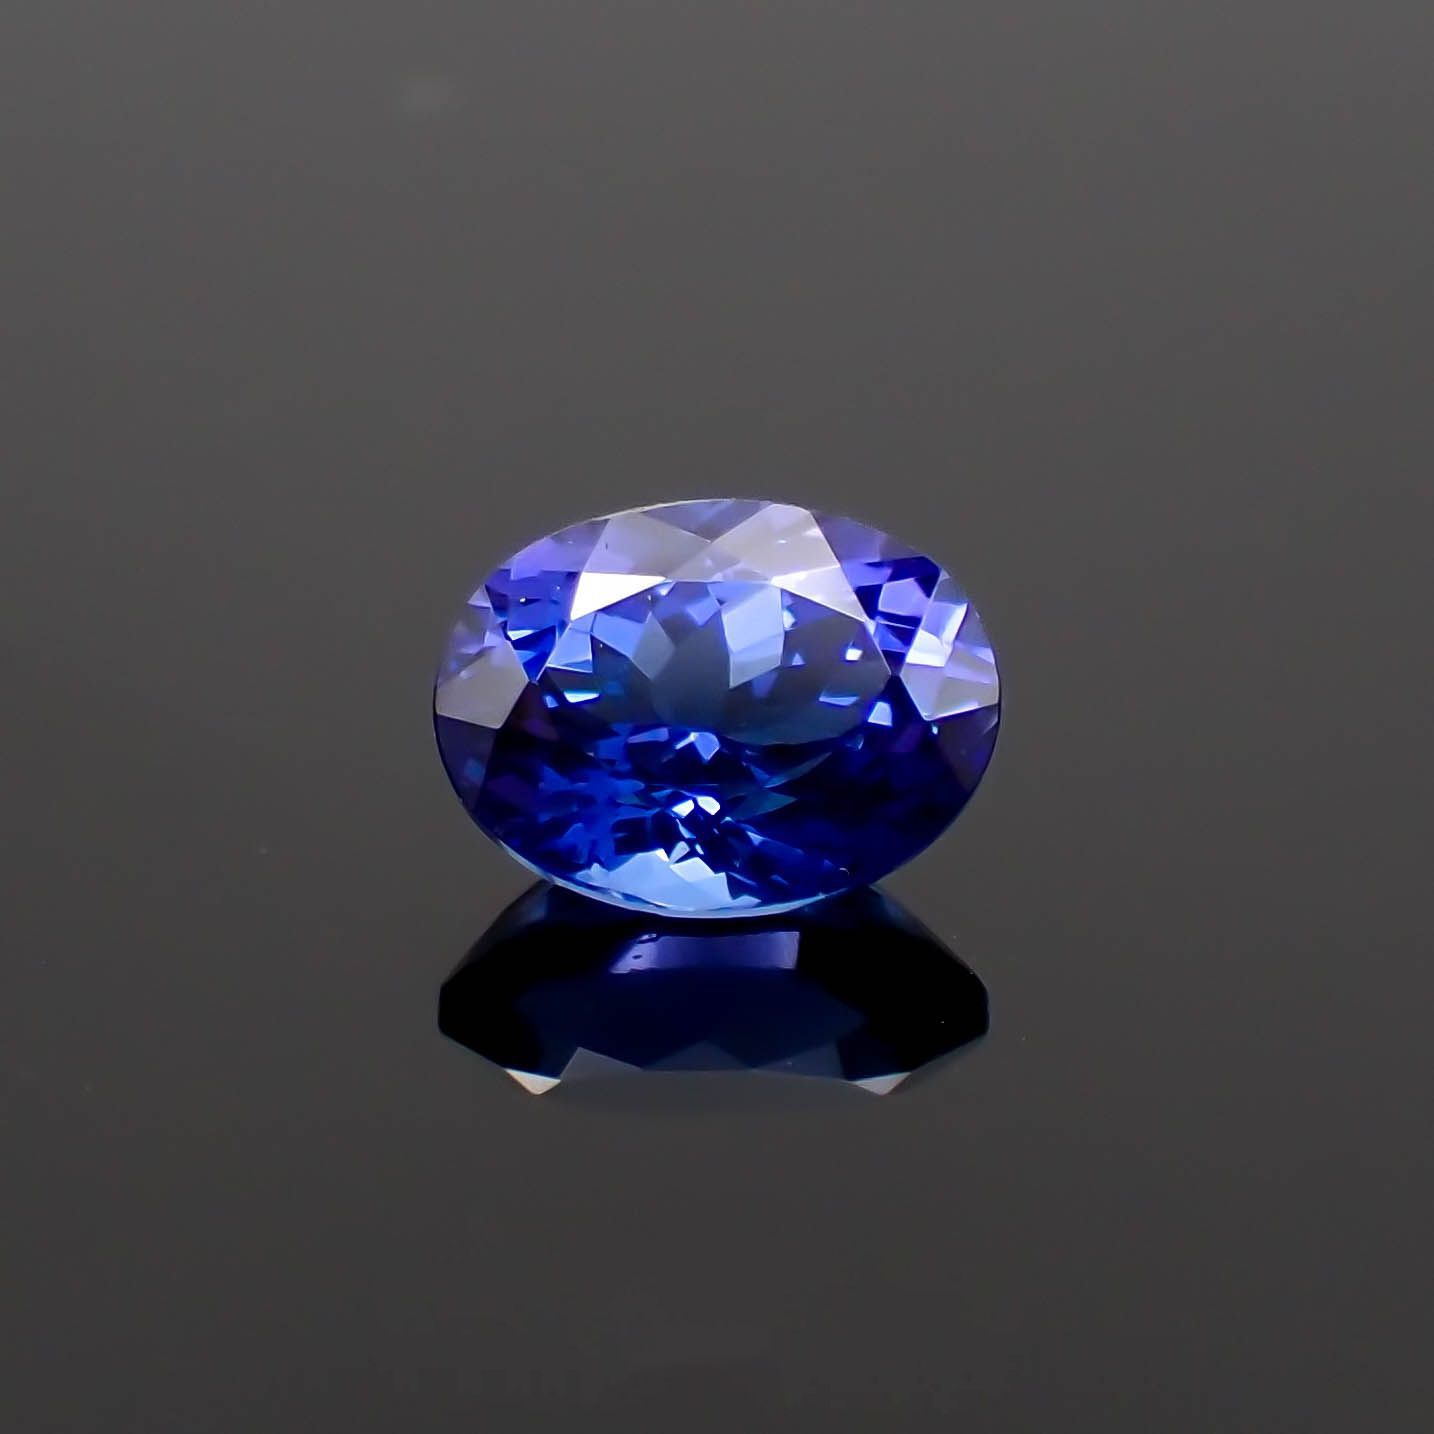 『天然ジルコン』1.04ct タンザニア産 ルース 宝石【1472】